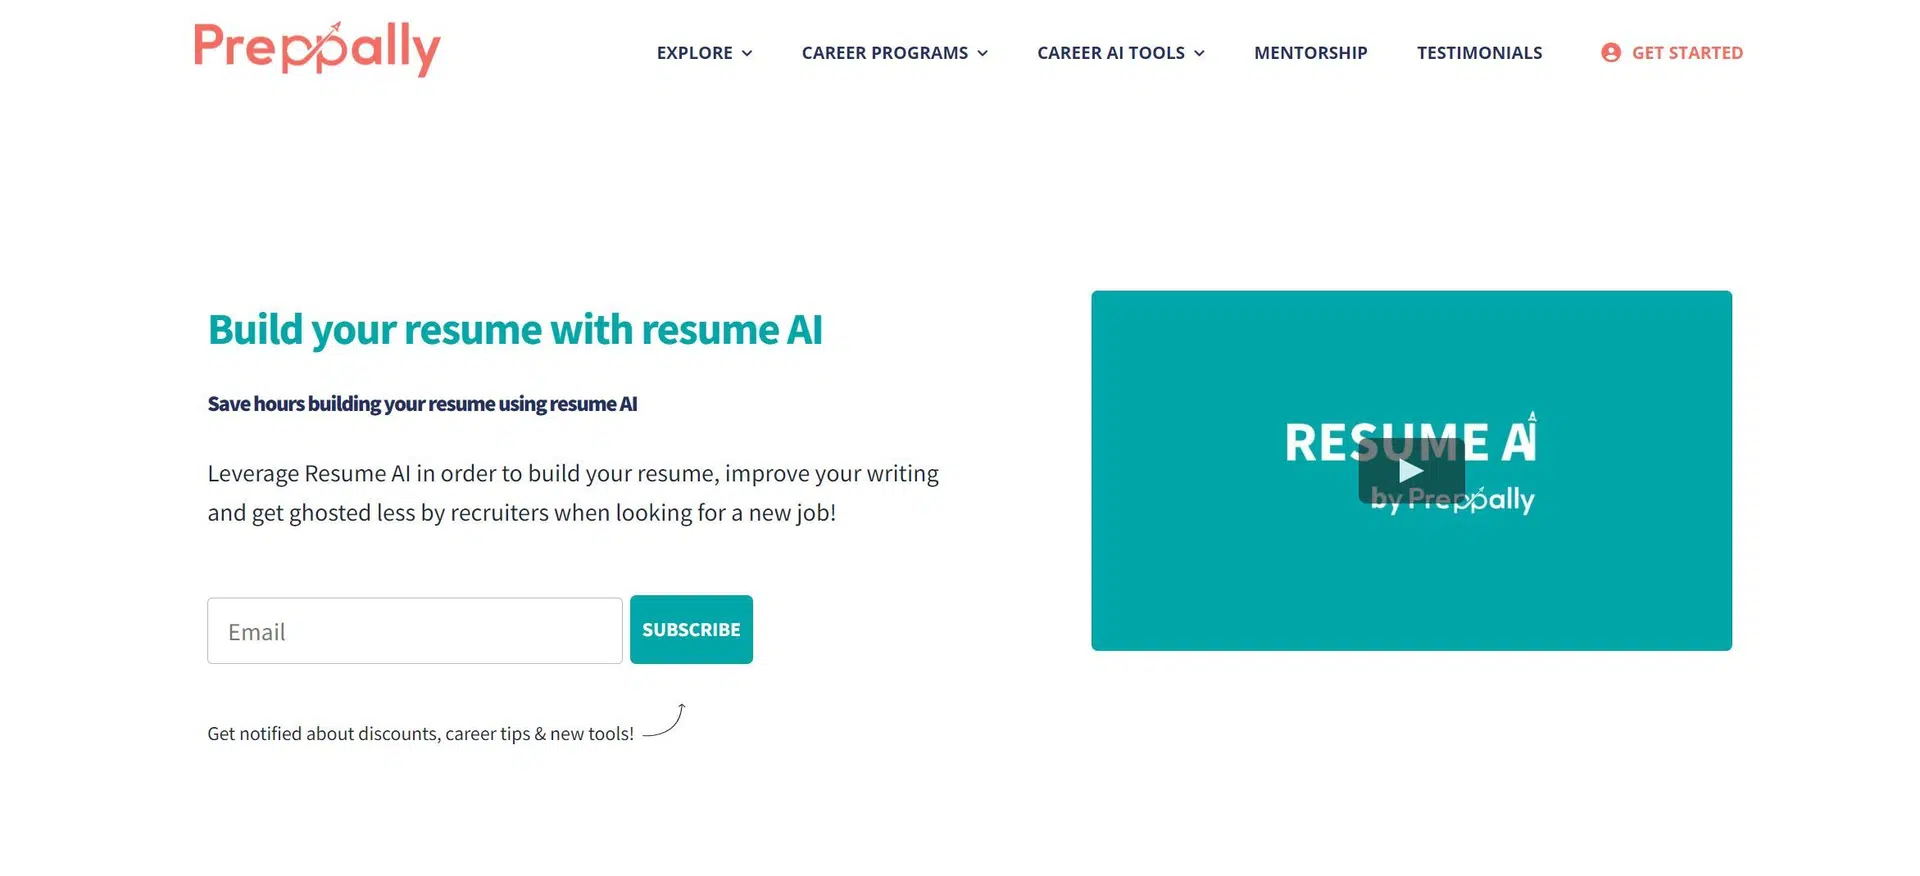 Resume AIwebsite picture